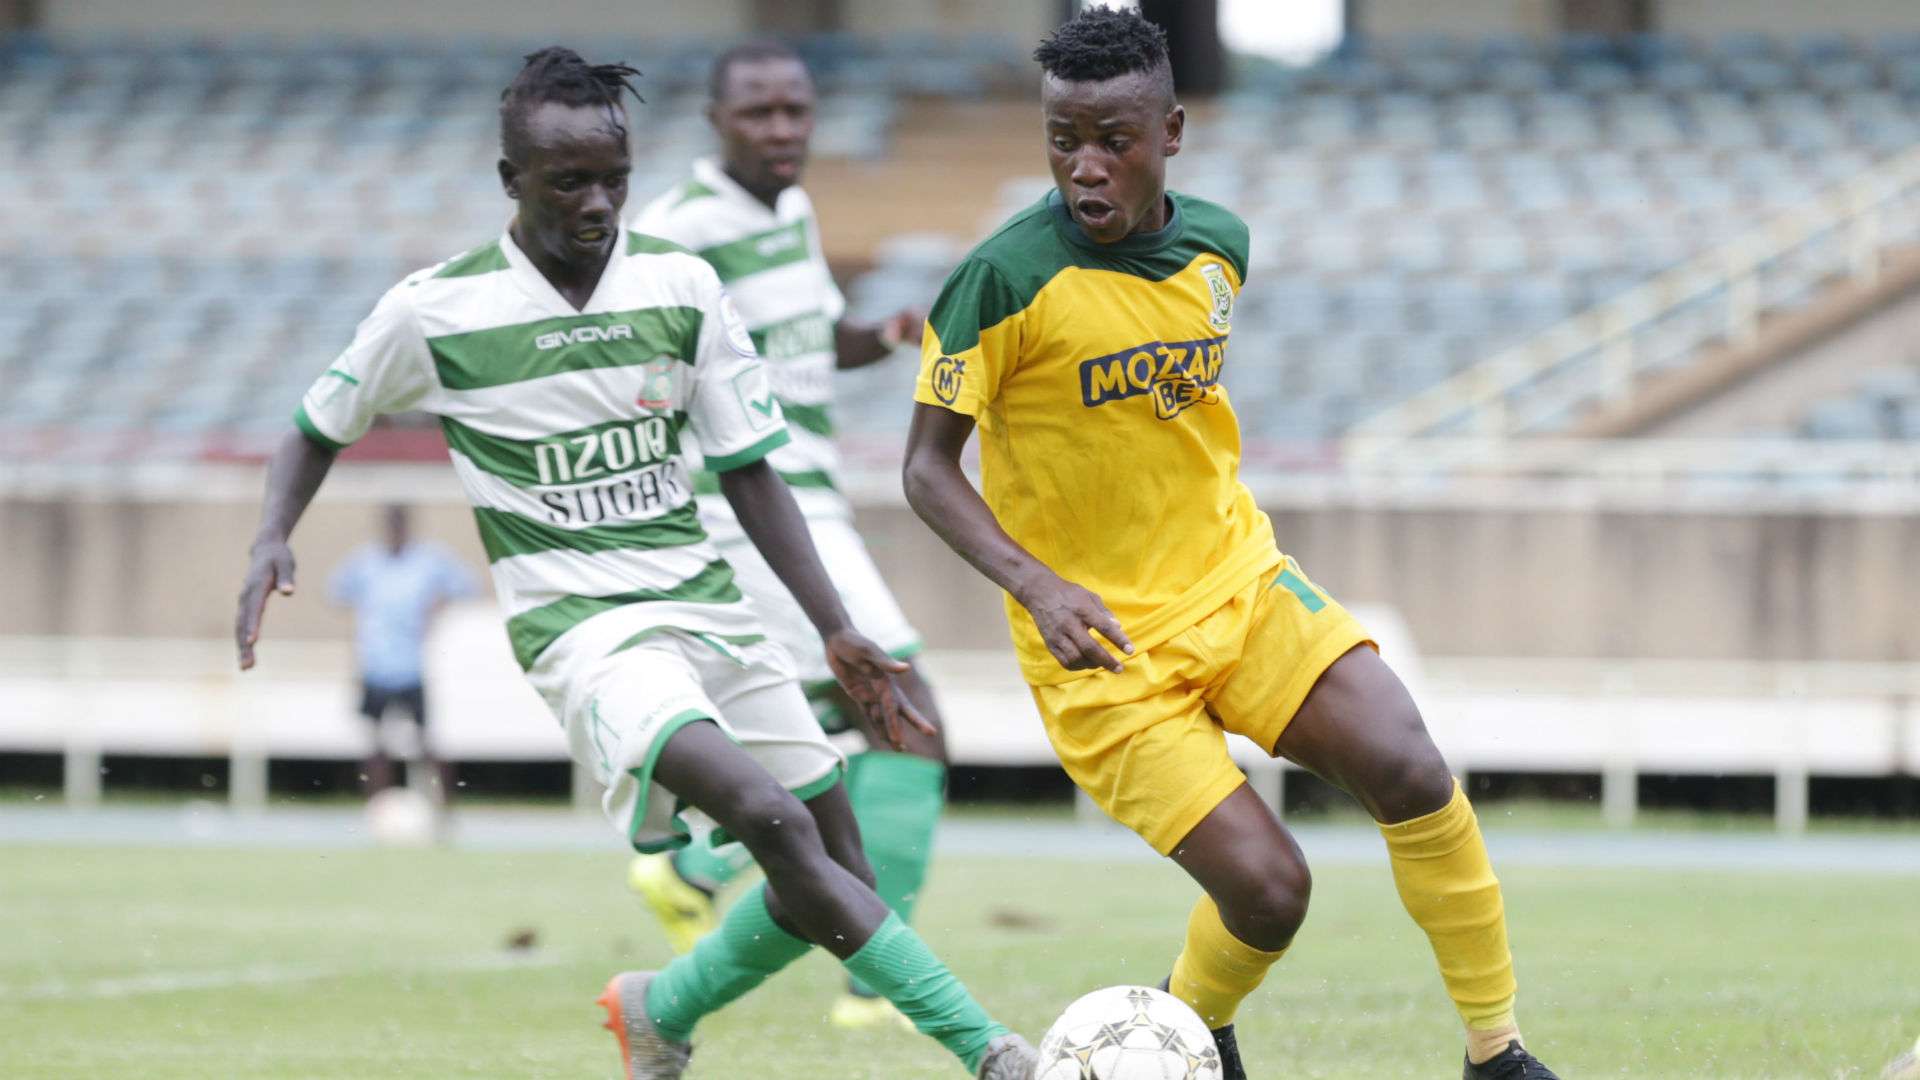 Robert Lokwang of Nzoia Sugar vs challenge David Owino of Mathare United.